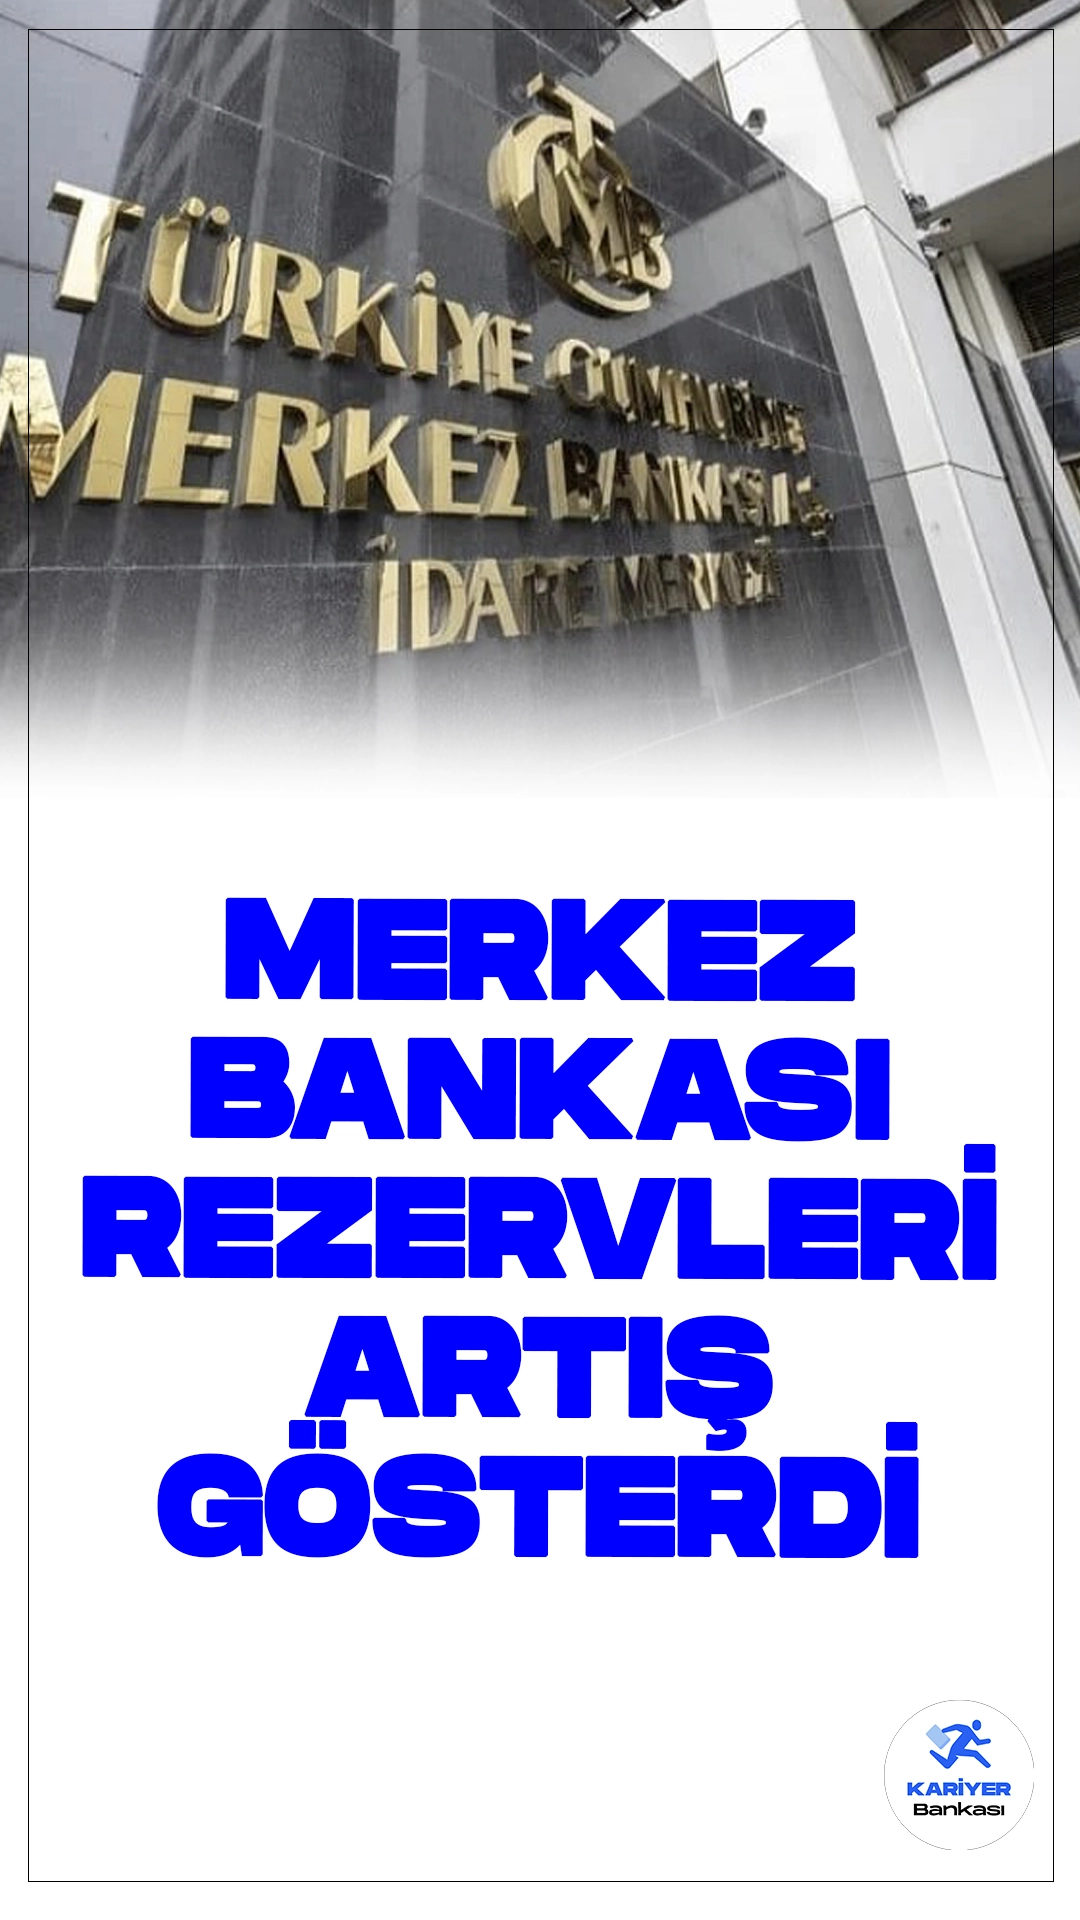 Merkez Bankası Rezervleri Artış Gösterdi.Türkiye Cumhuriyet Merkez Bankası (TCMB) toplam rezervleri, 17 Mayıs haftasında bir önceki haftaya göre 4 milyar 723 milyon dolar artarak 139 milyar 125 milyon dolara ulaştı.